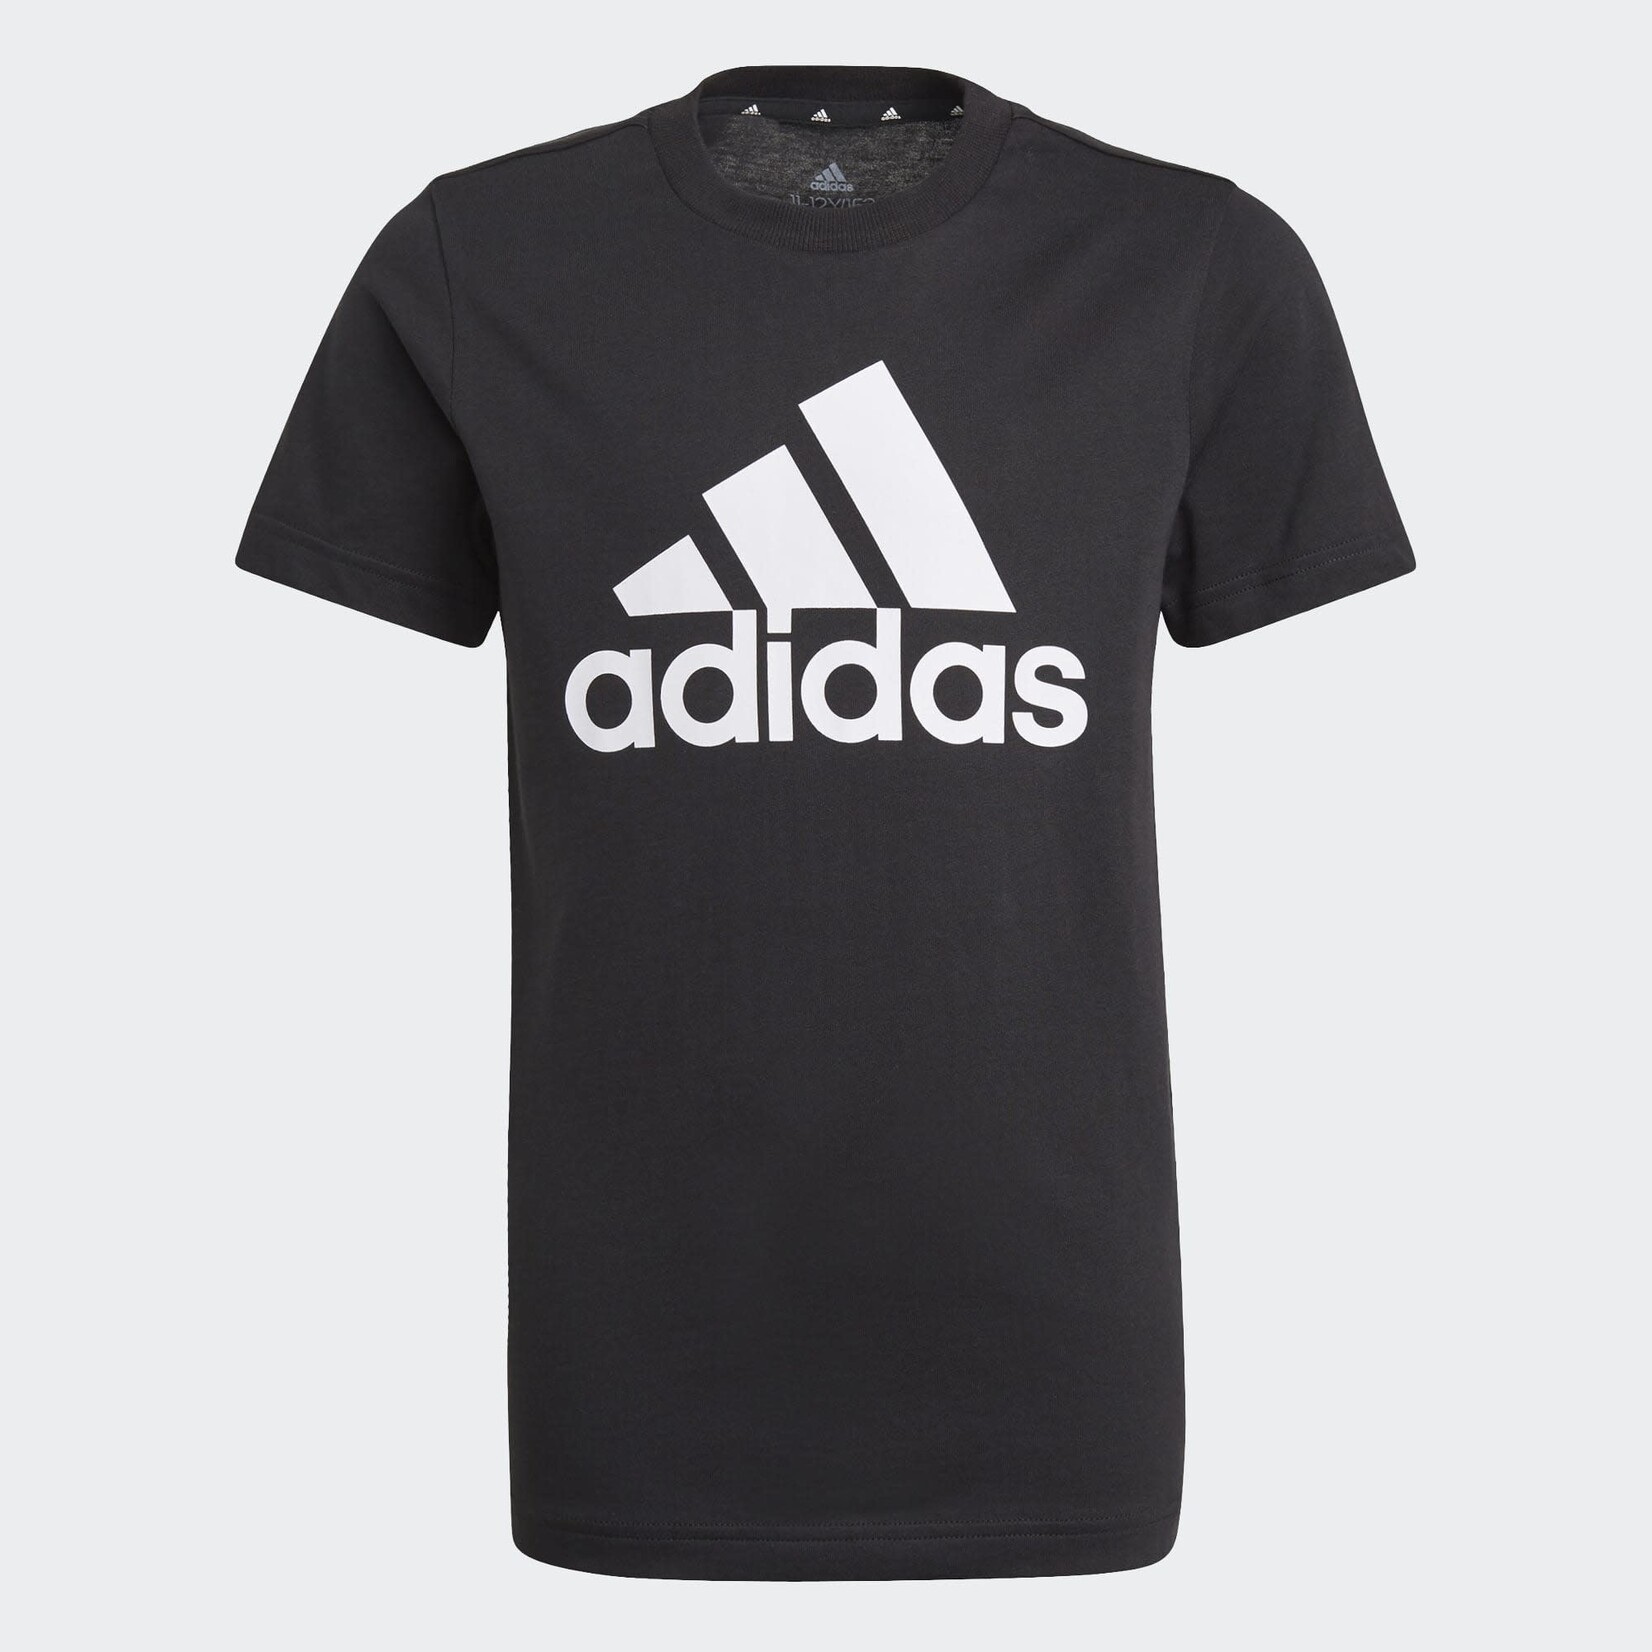 Adidas Adidas T-Shirt, Essentials Big Logo, Boys